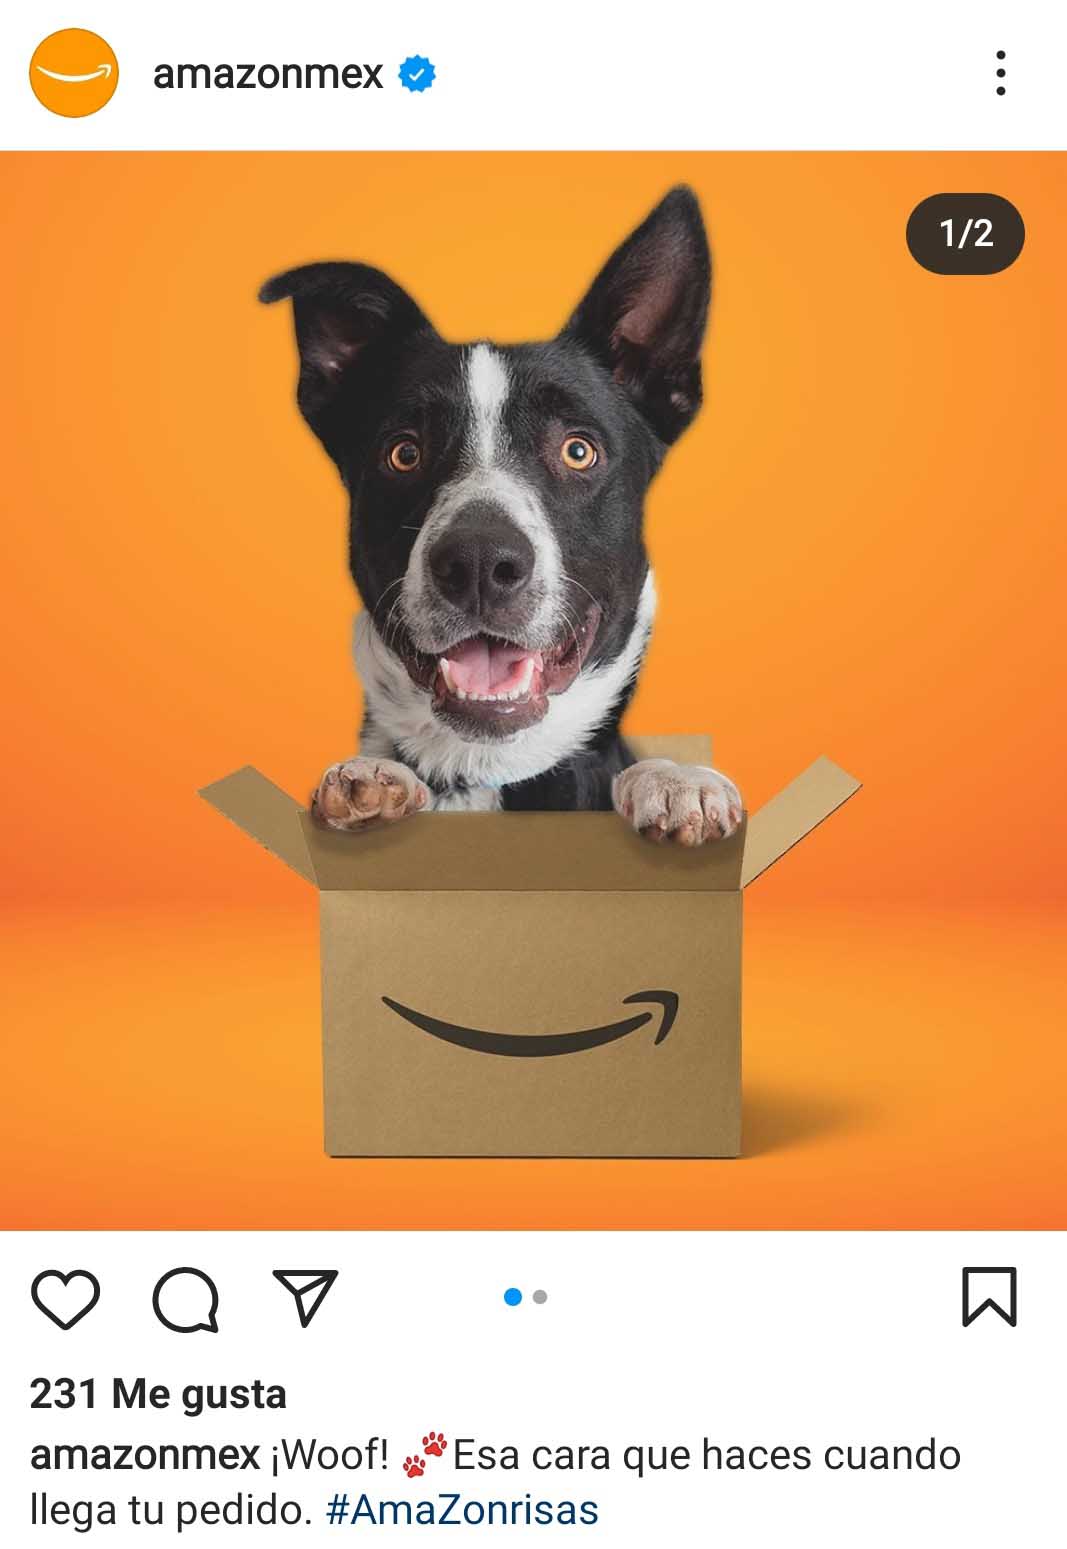 Ejemplo de publicidad en redes sociales de Amazon